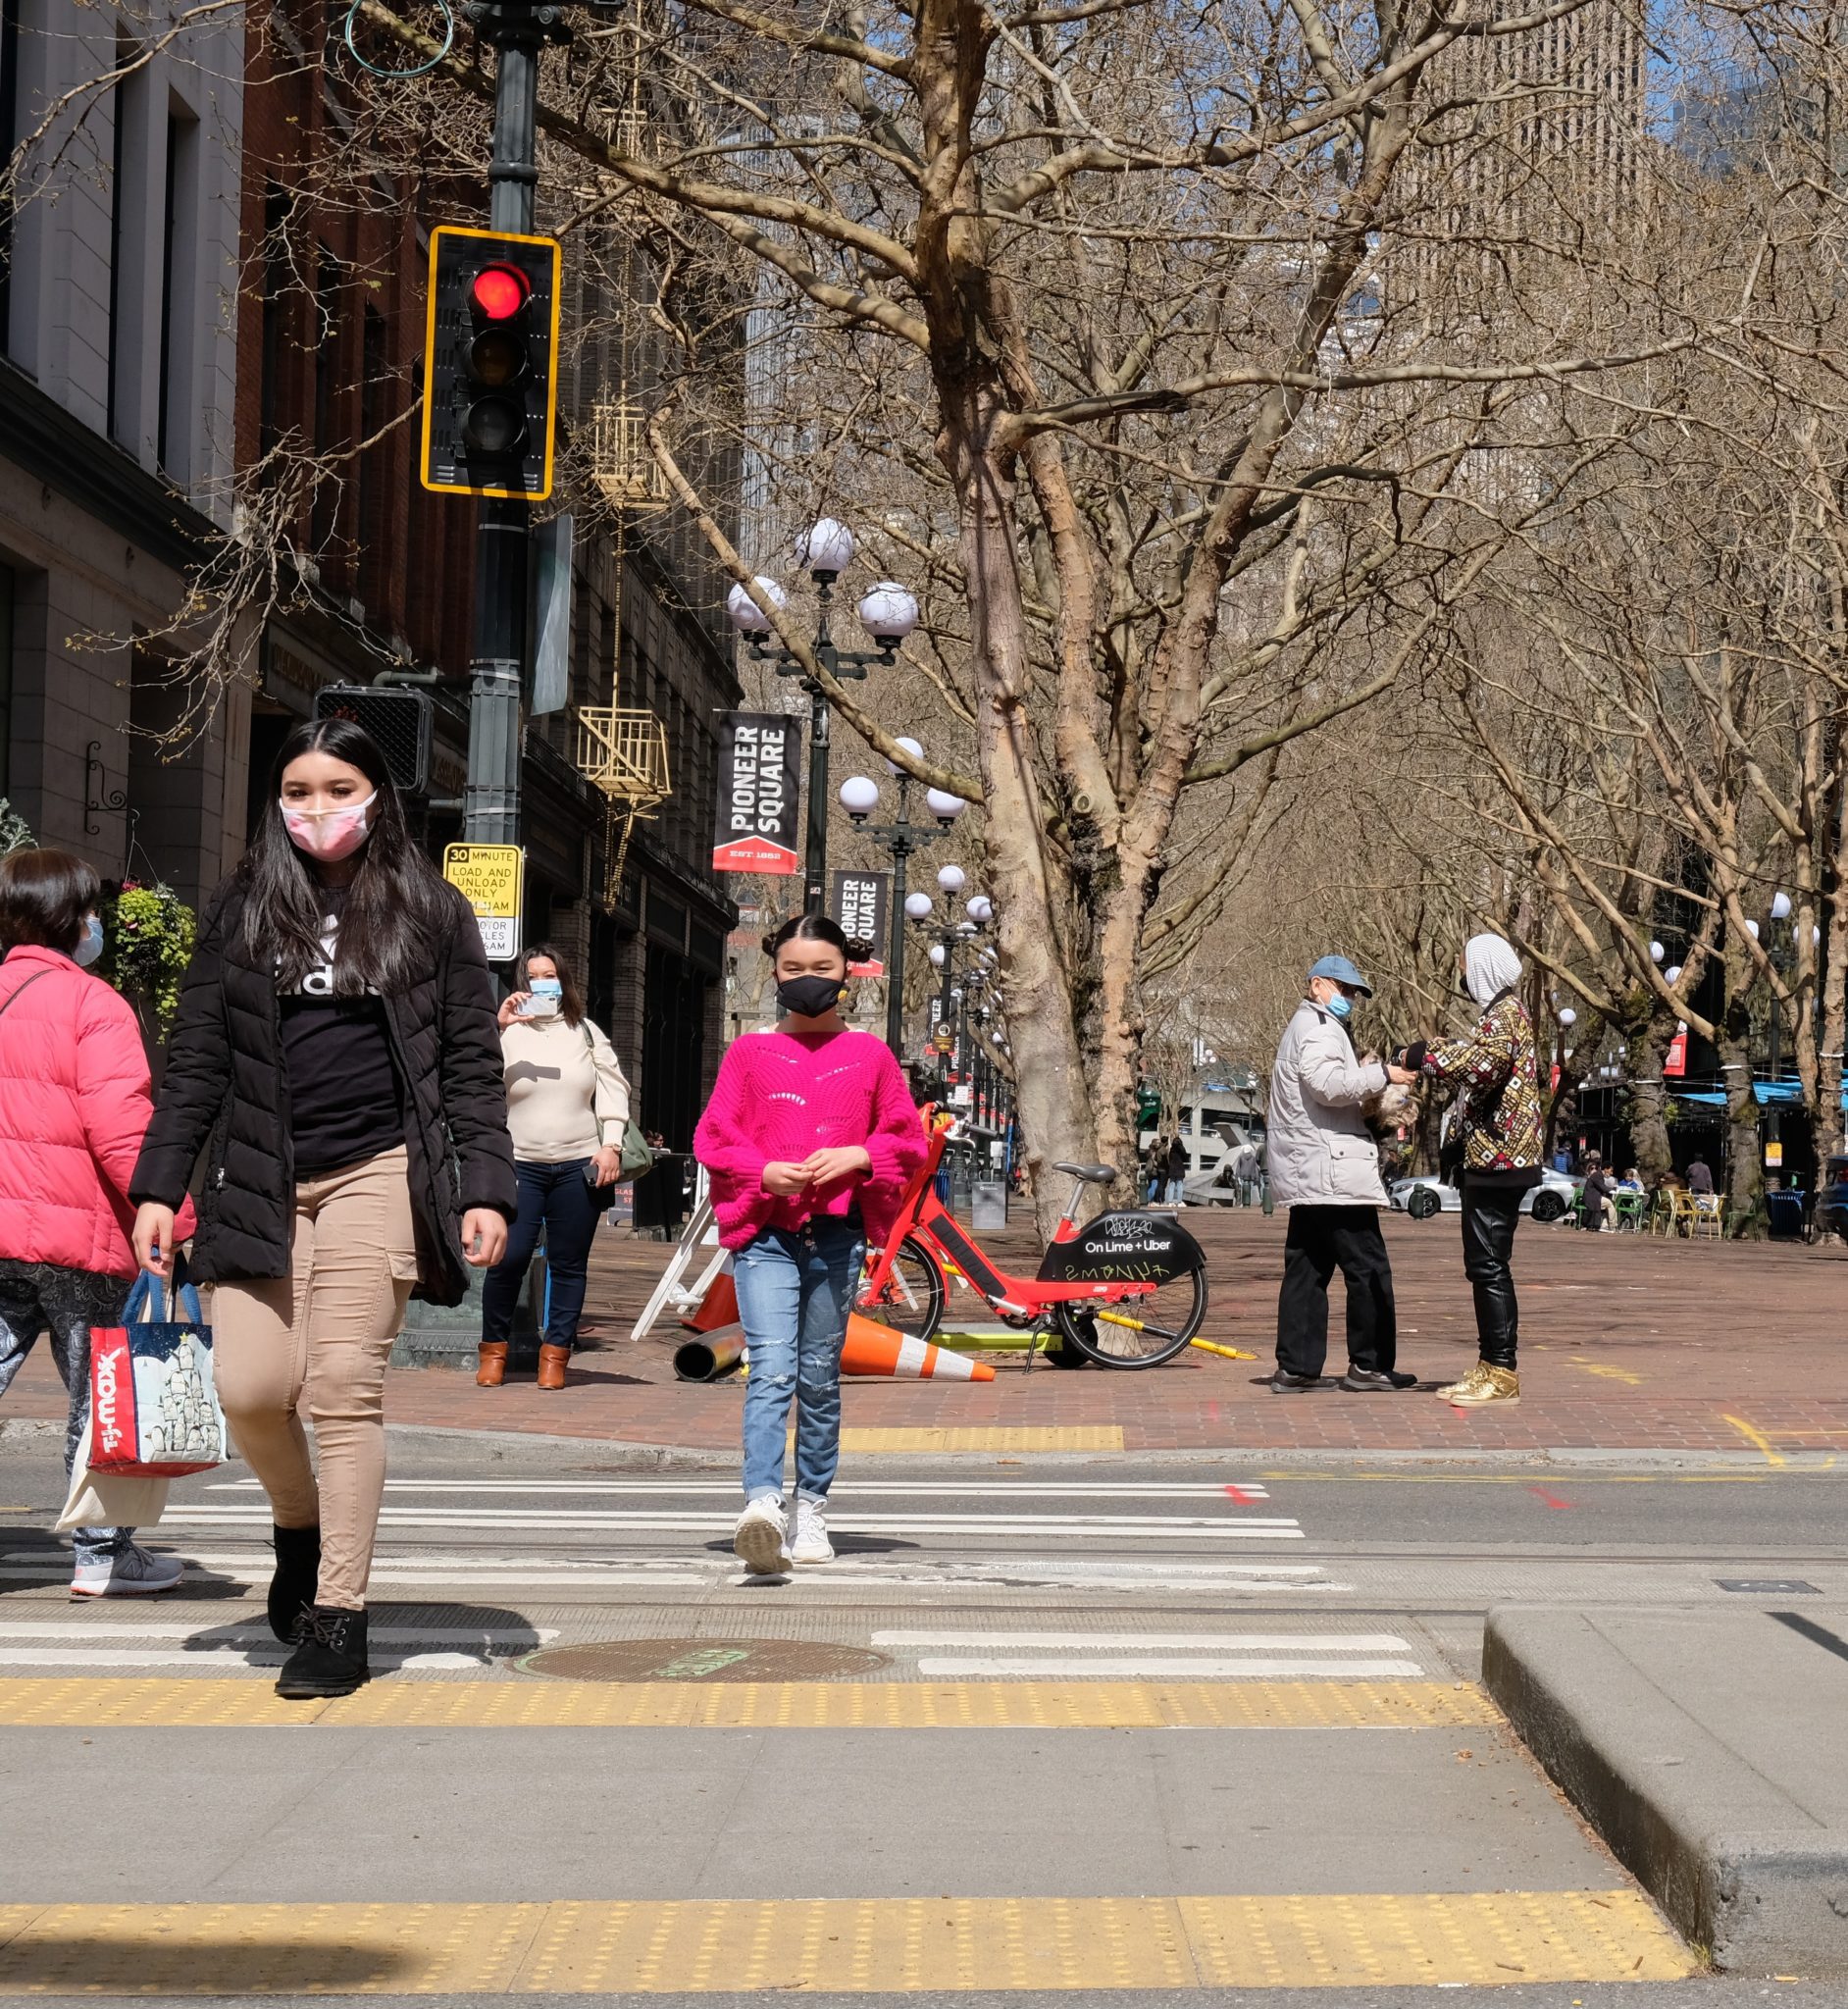 People walk across the street in Seattle’s Pioneer Square neighborhood.